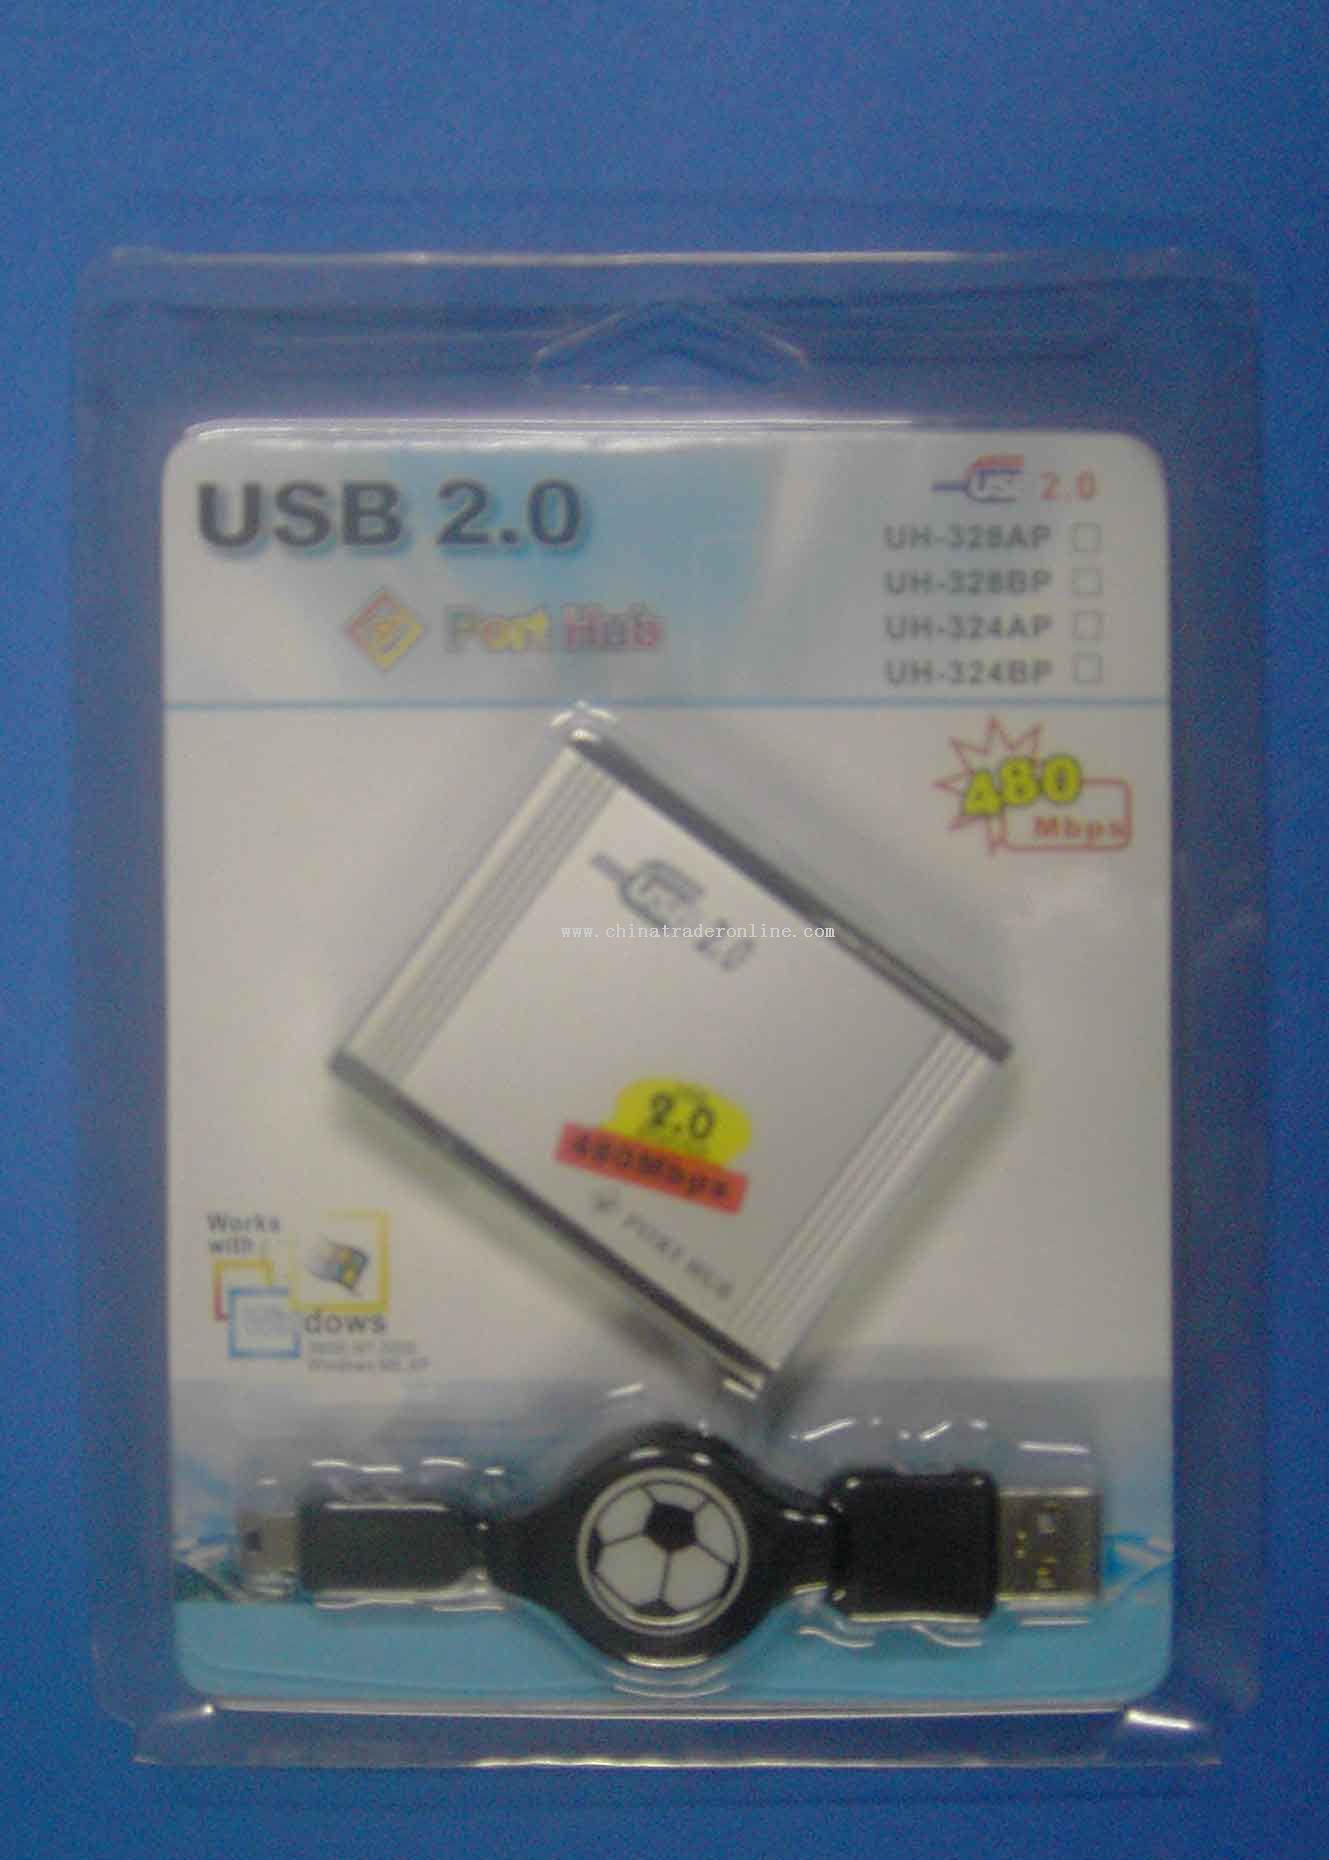 USB HUB from China